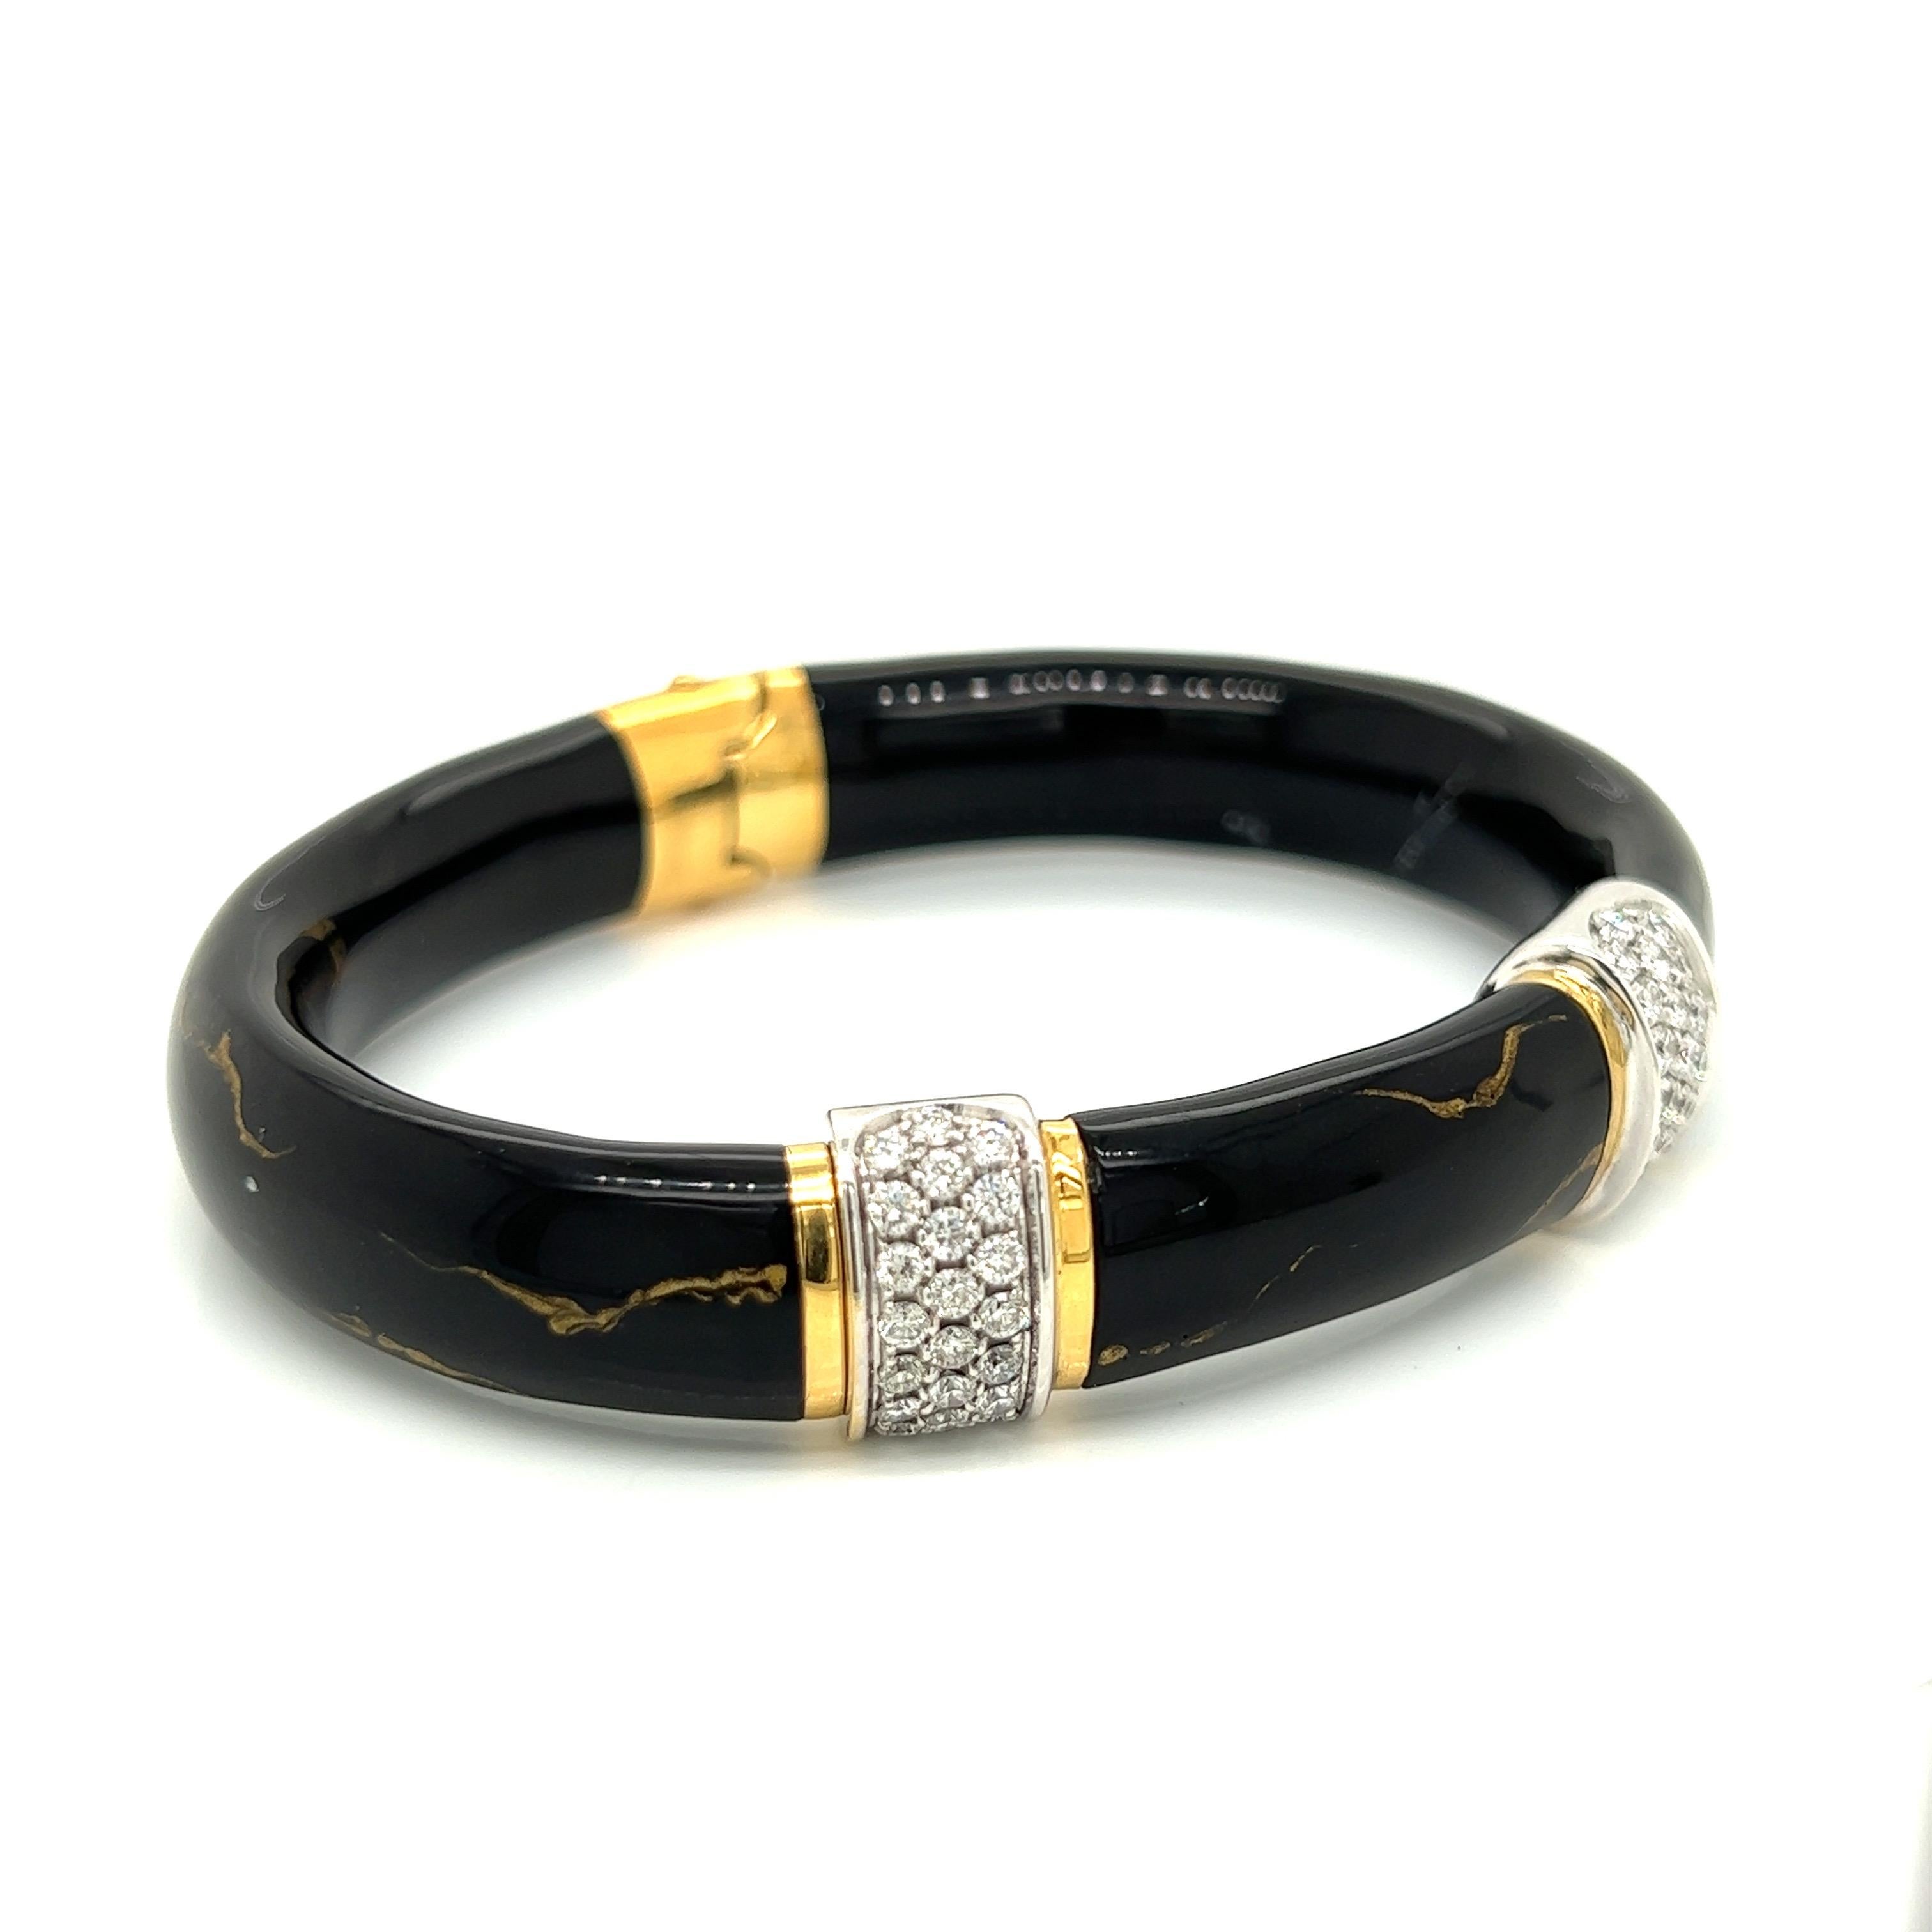 Le bracelet noir et or de SOHO est fabriqué à la main en Italie. Ce bracelet à la fois traditionnel et moderne est en or blanc et jaune 18kt, émaillé et serti de 1,32 ctw de diamants. Le bracelet de 11 mm de large est doté d'une charnière cachée sur